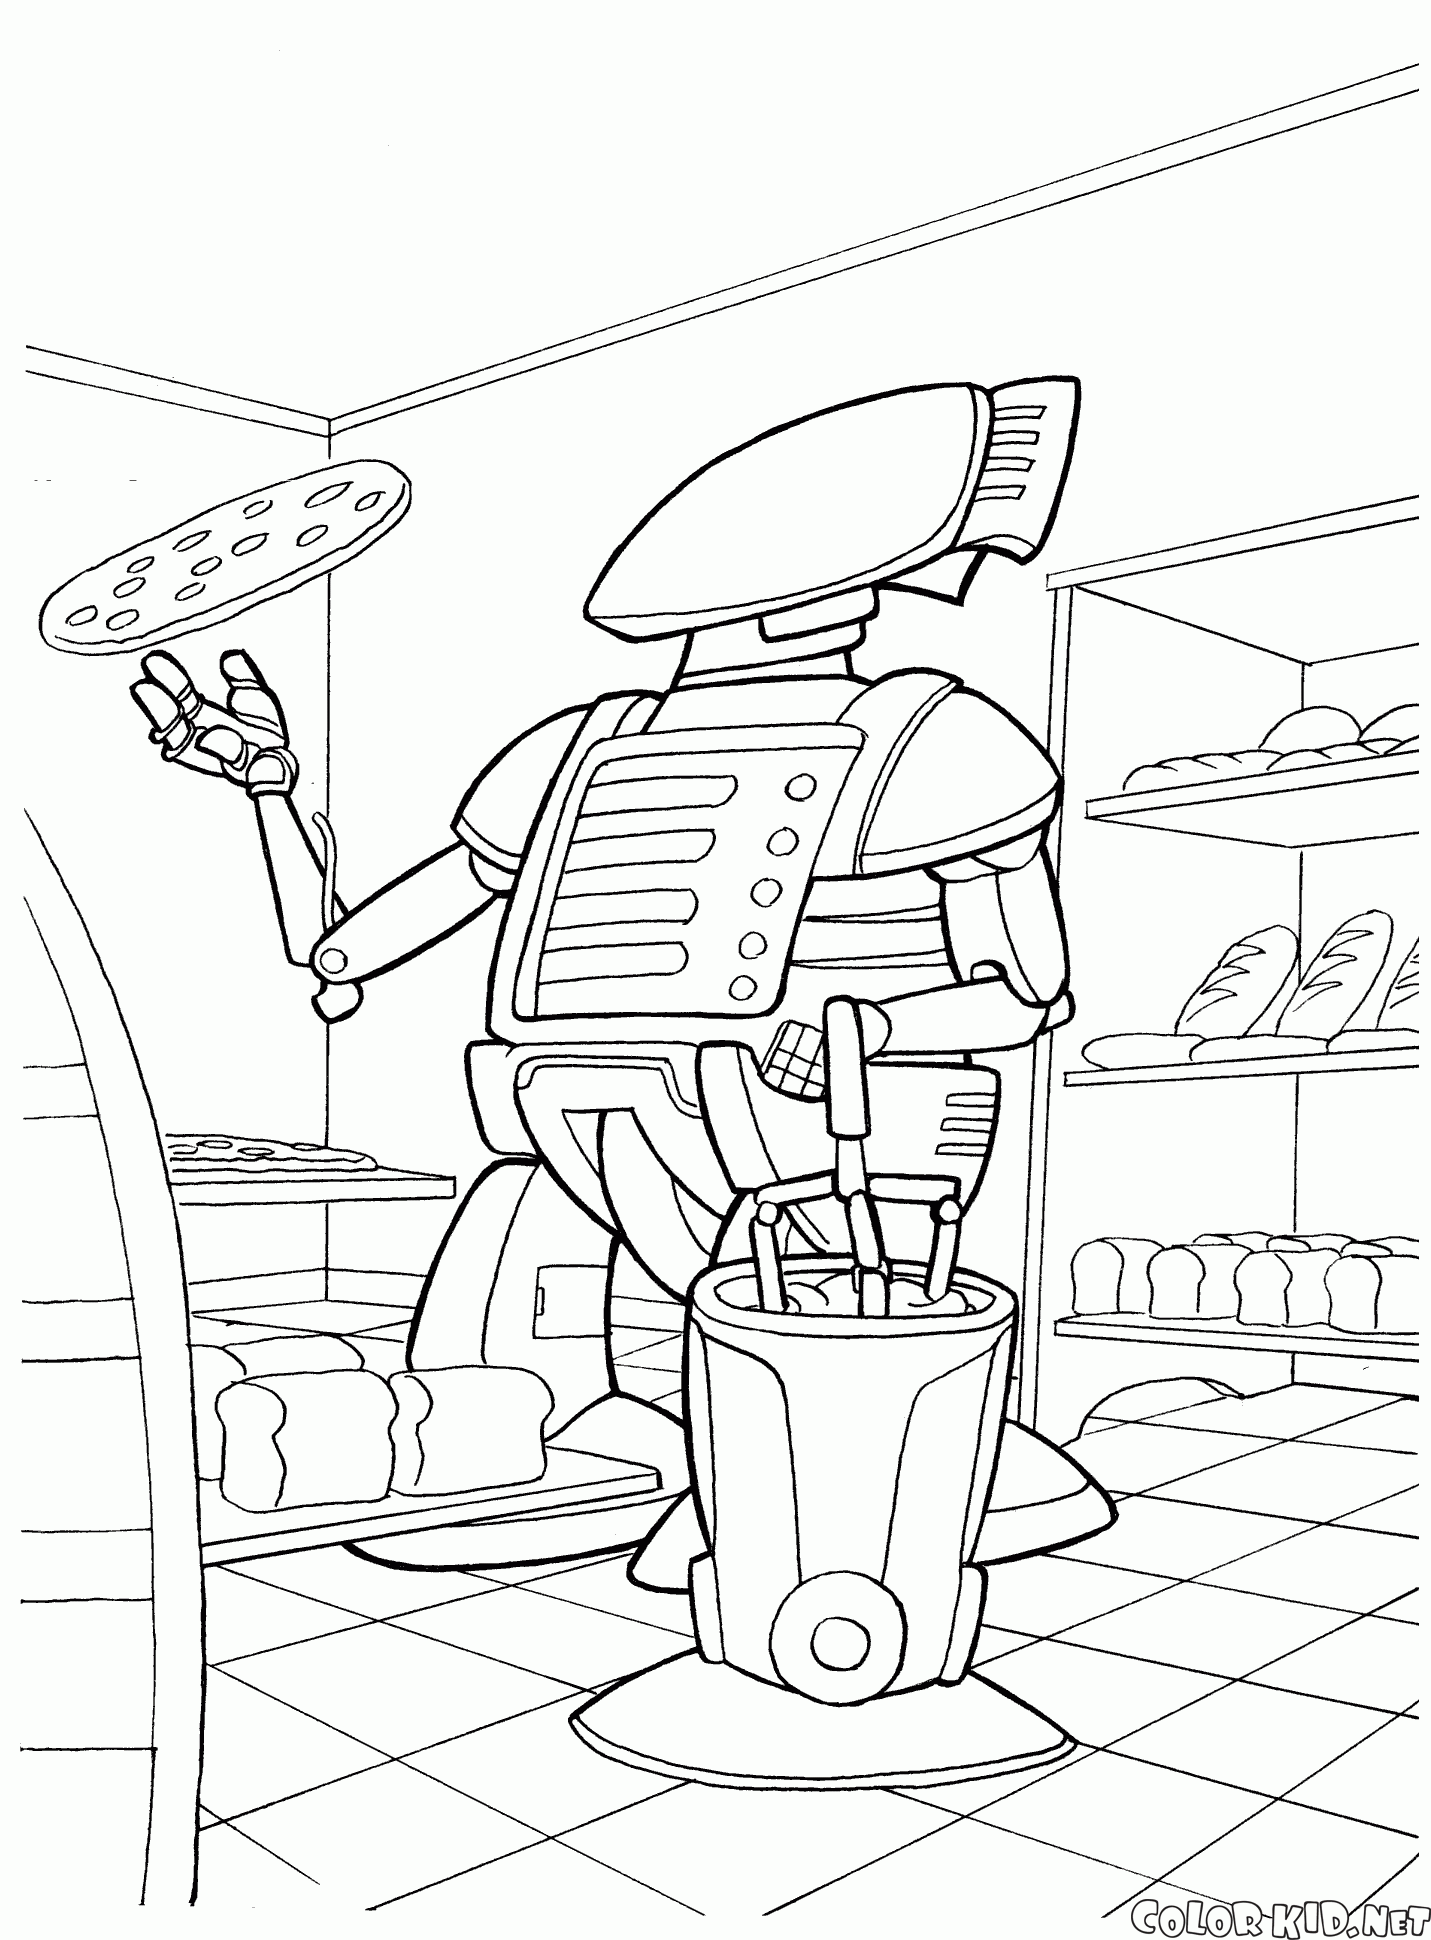 Robot cocinero